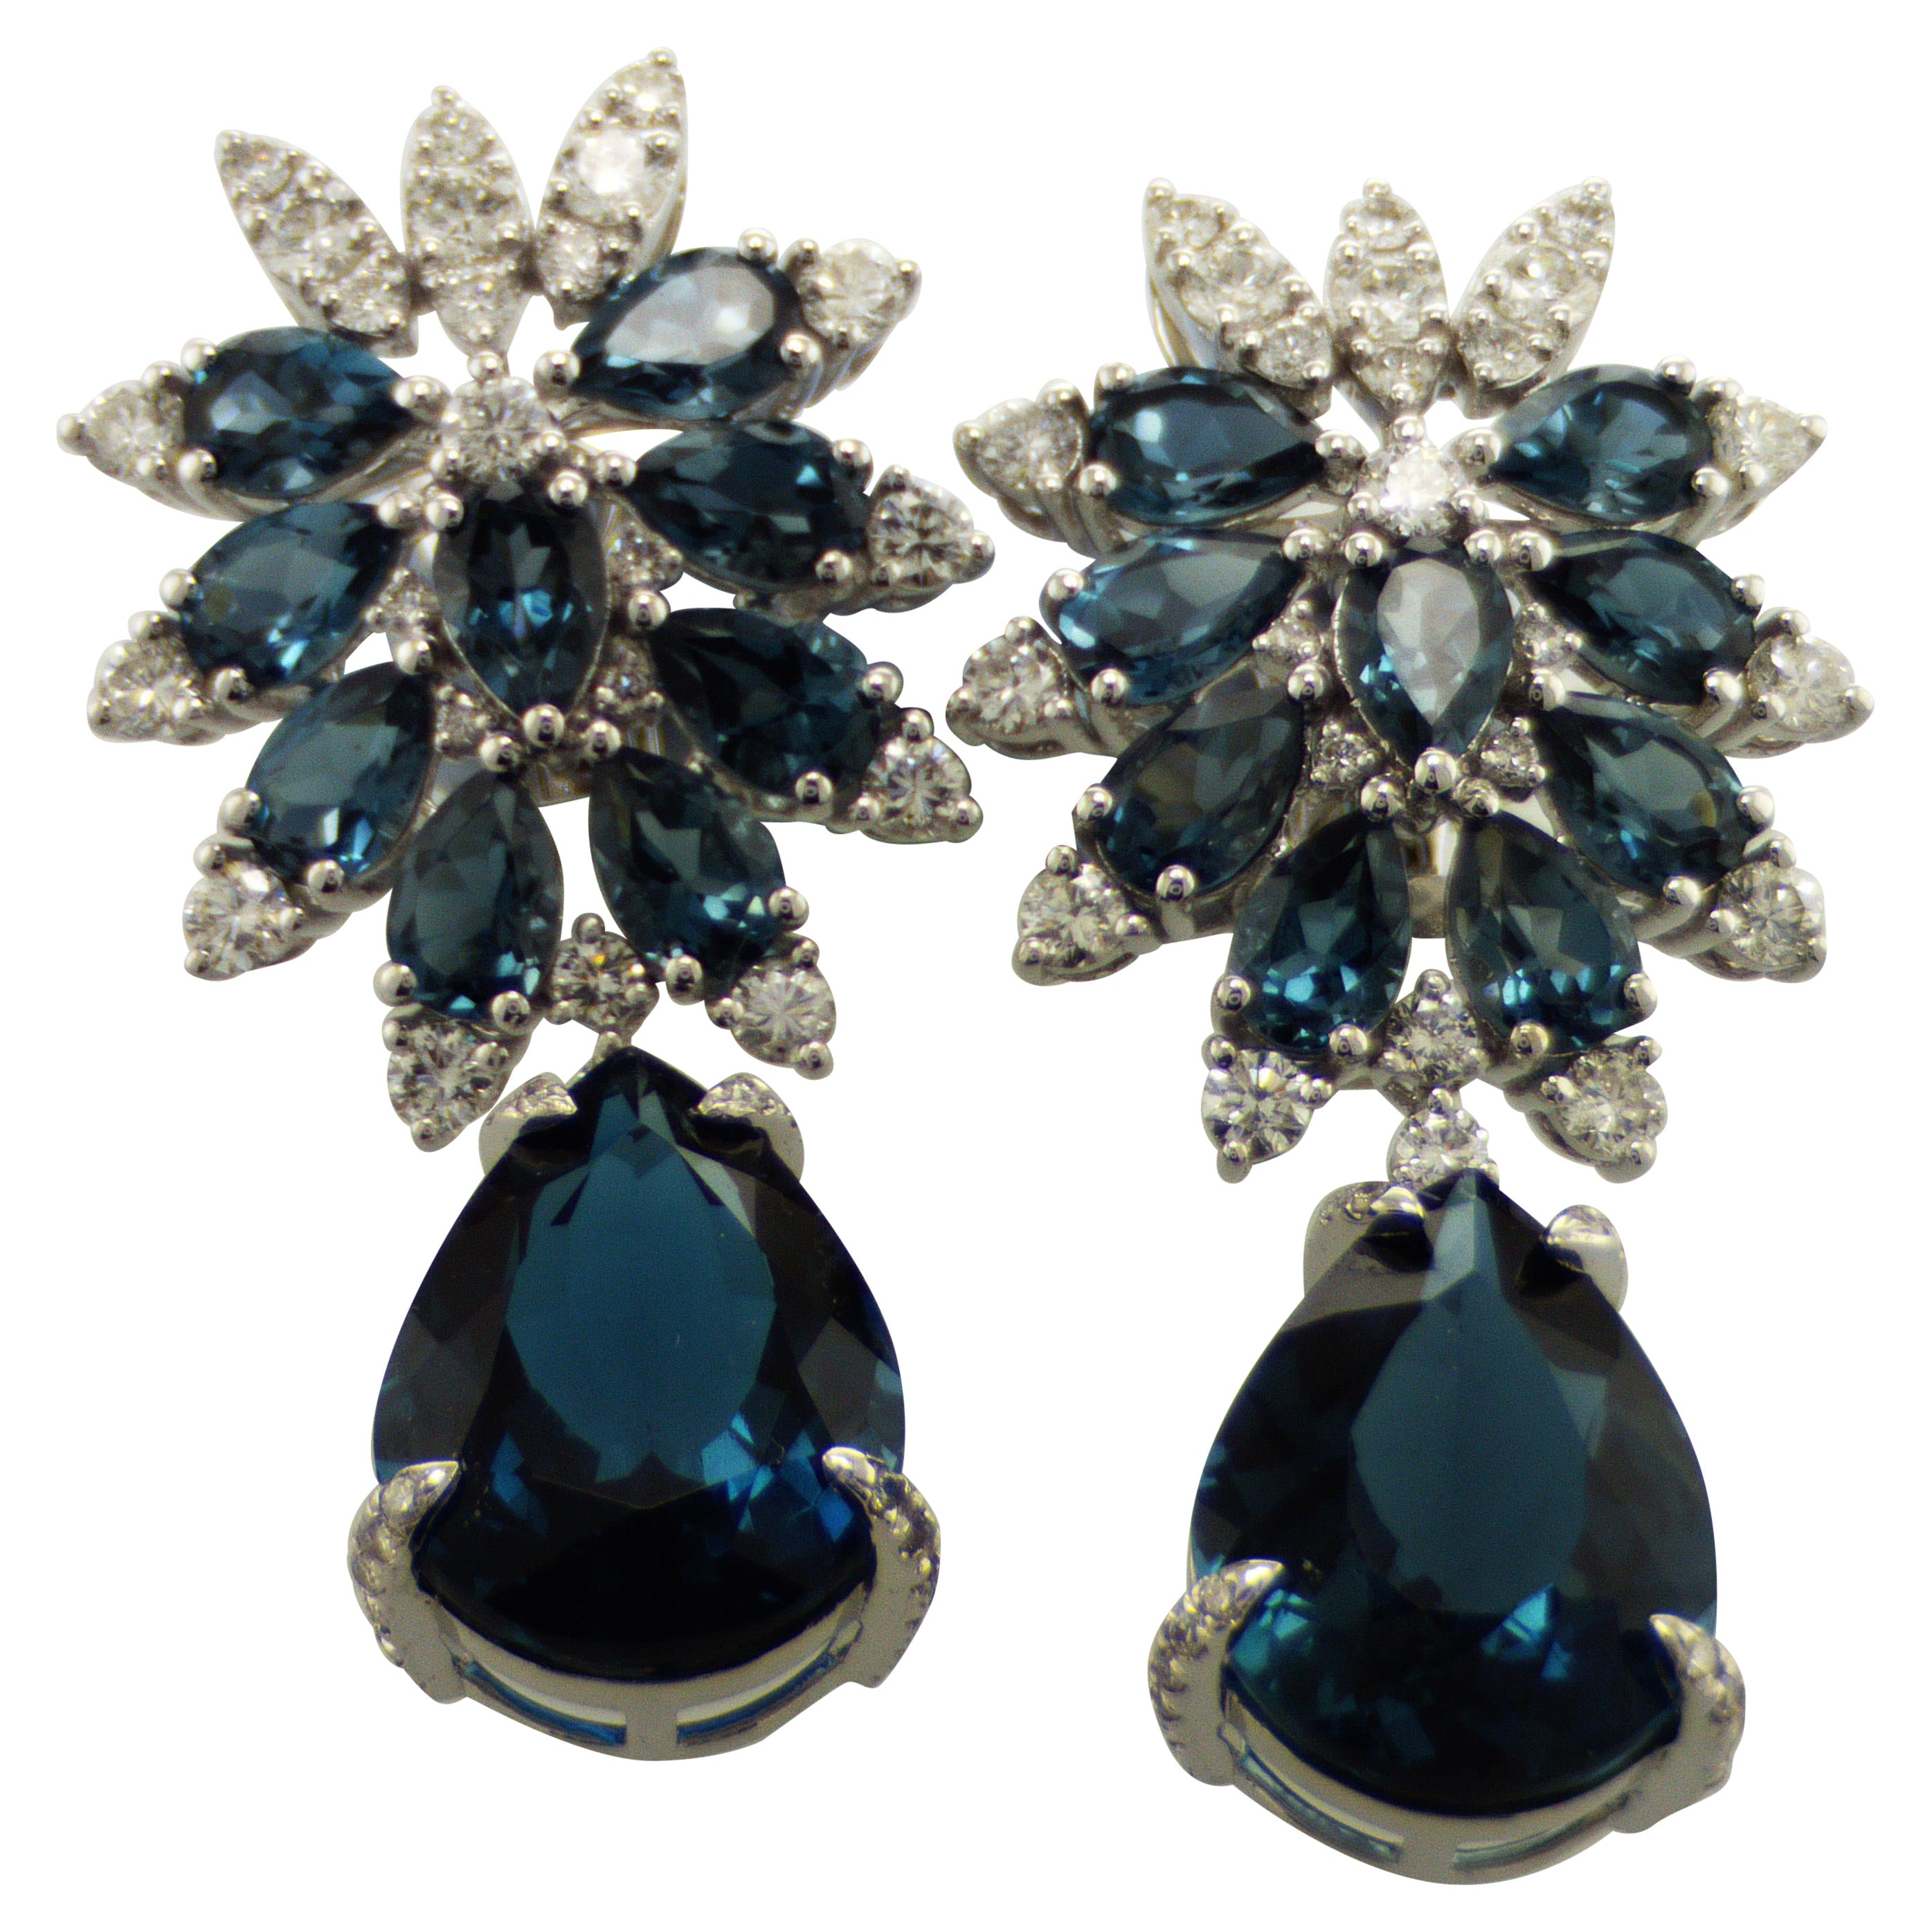 IDL certified London Blue Topaz Diamond Earrings For Sale